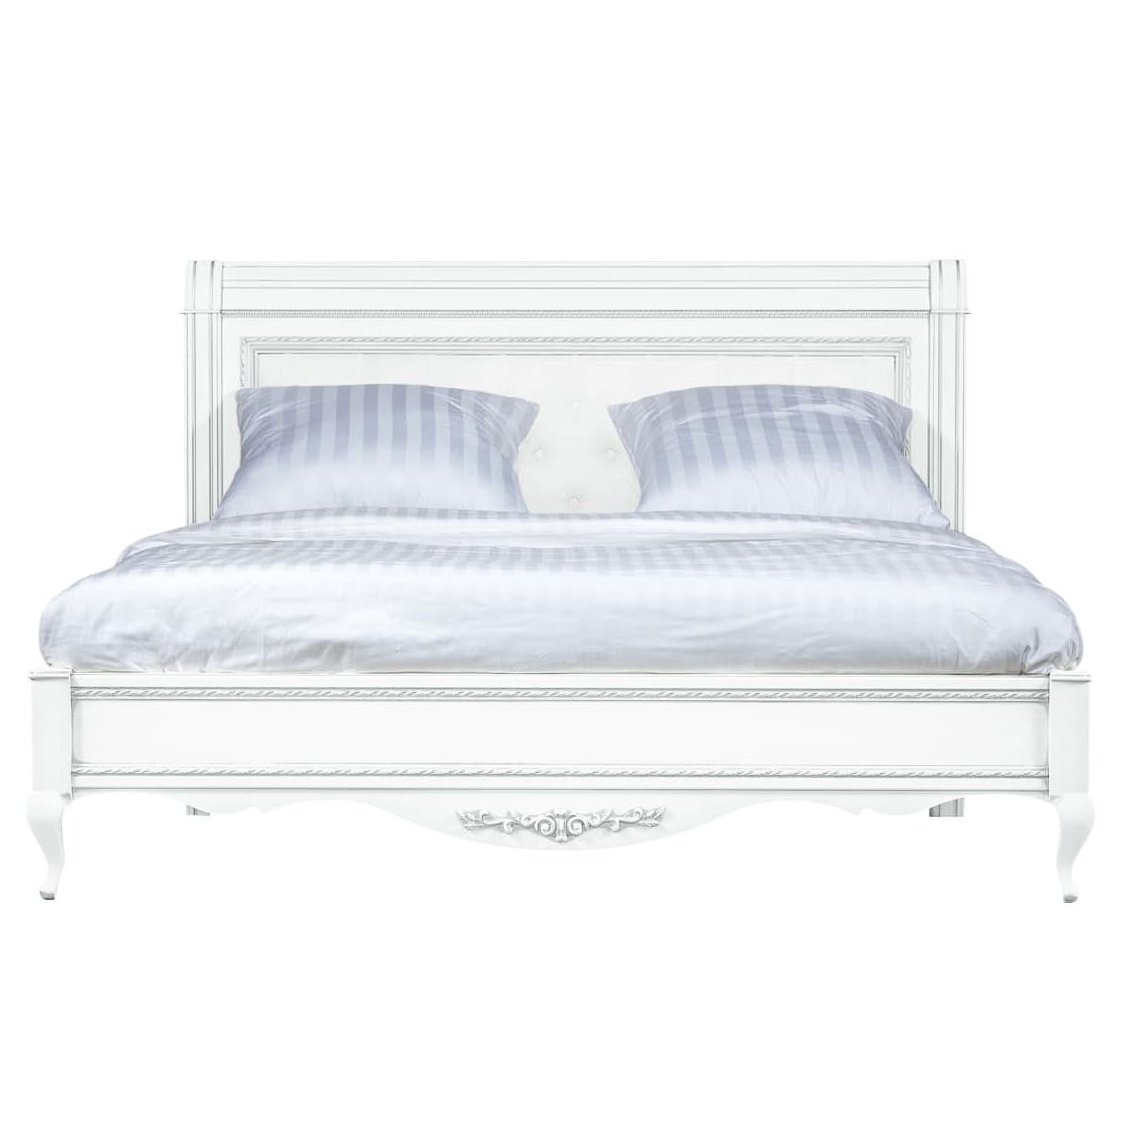 Кровать Timber Неаполь, двуспальная с мягким изголовьем 180x200 см, цвет: белый с серебром (Т-528/BA)Т-528